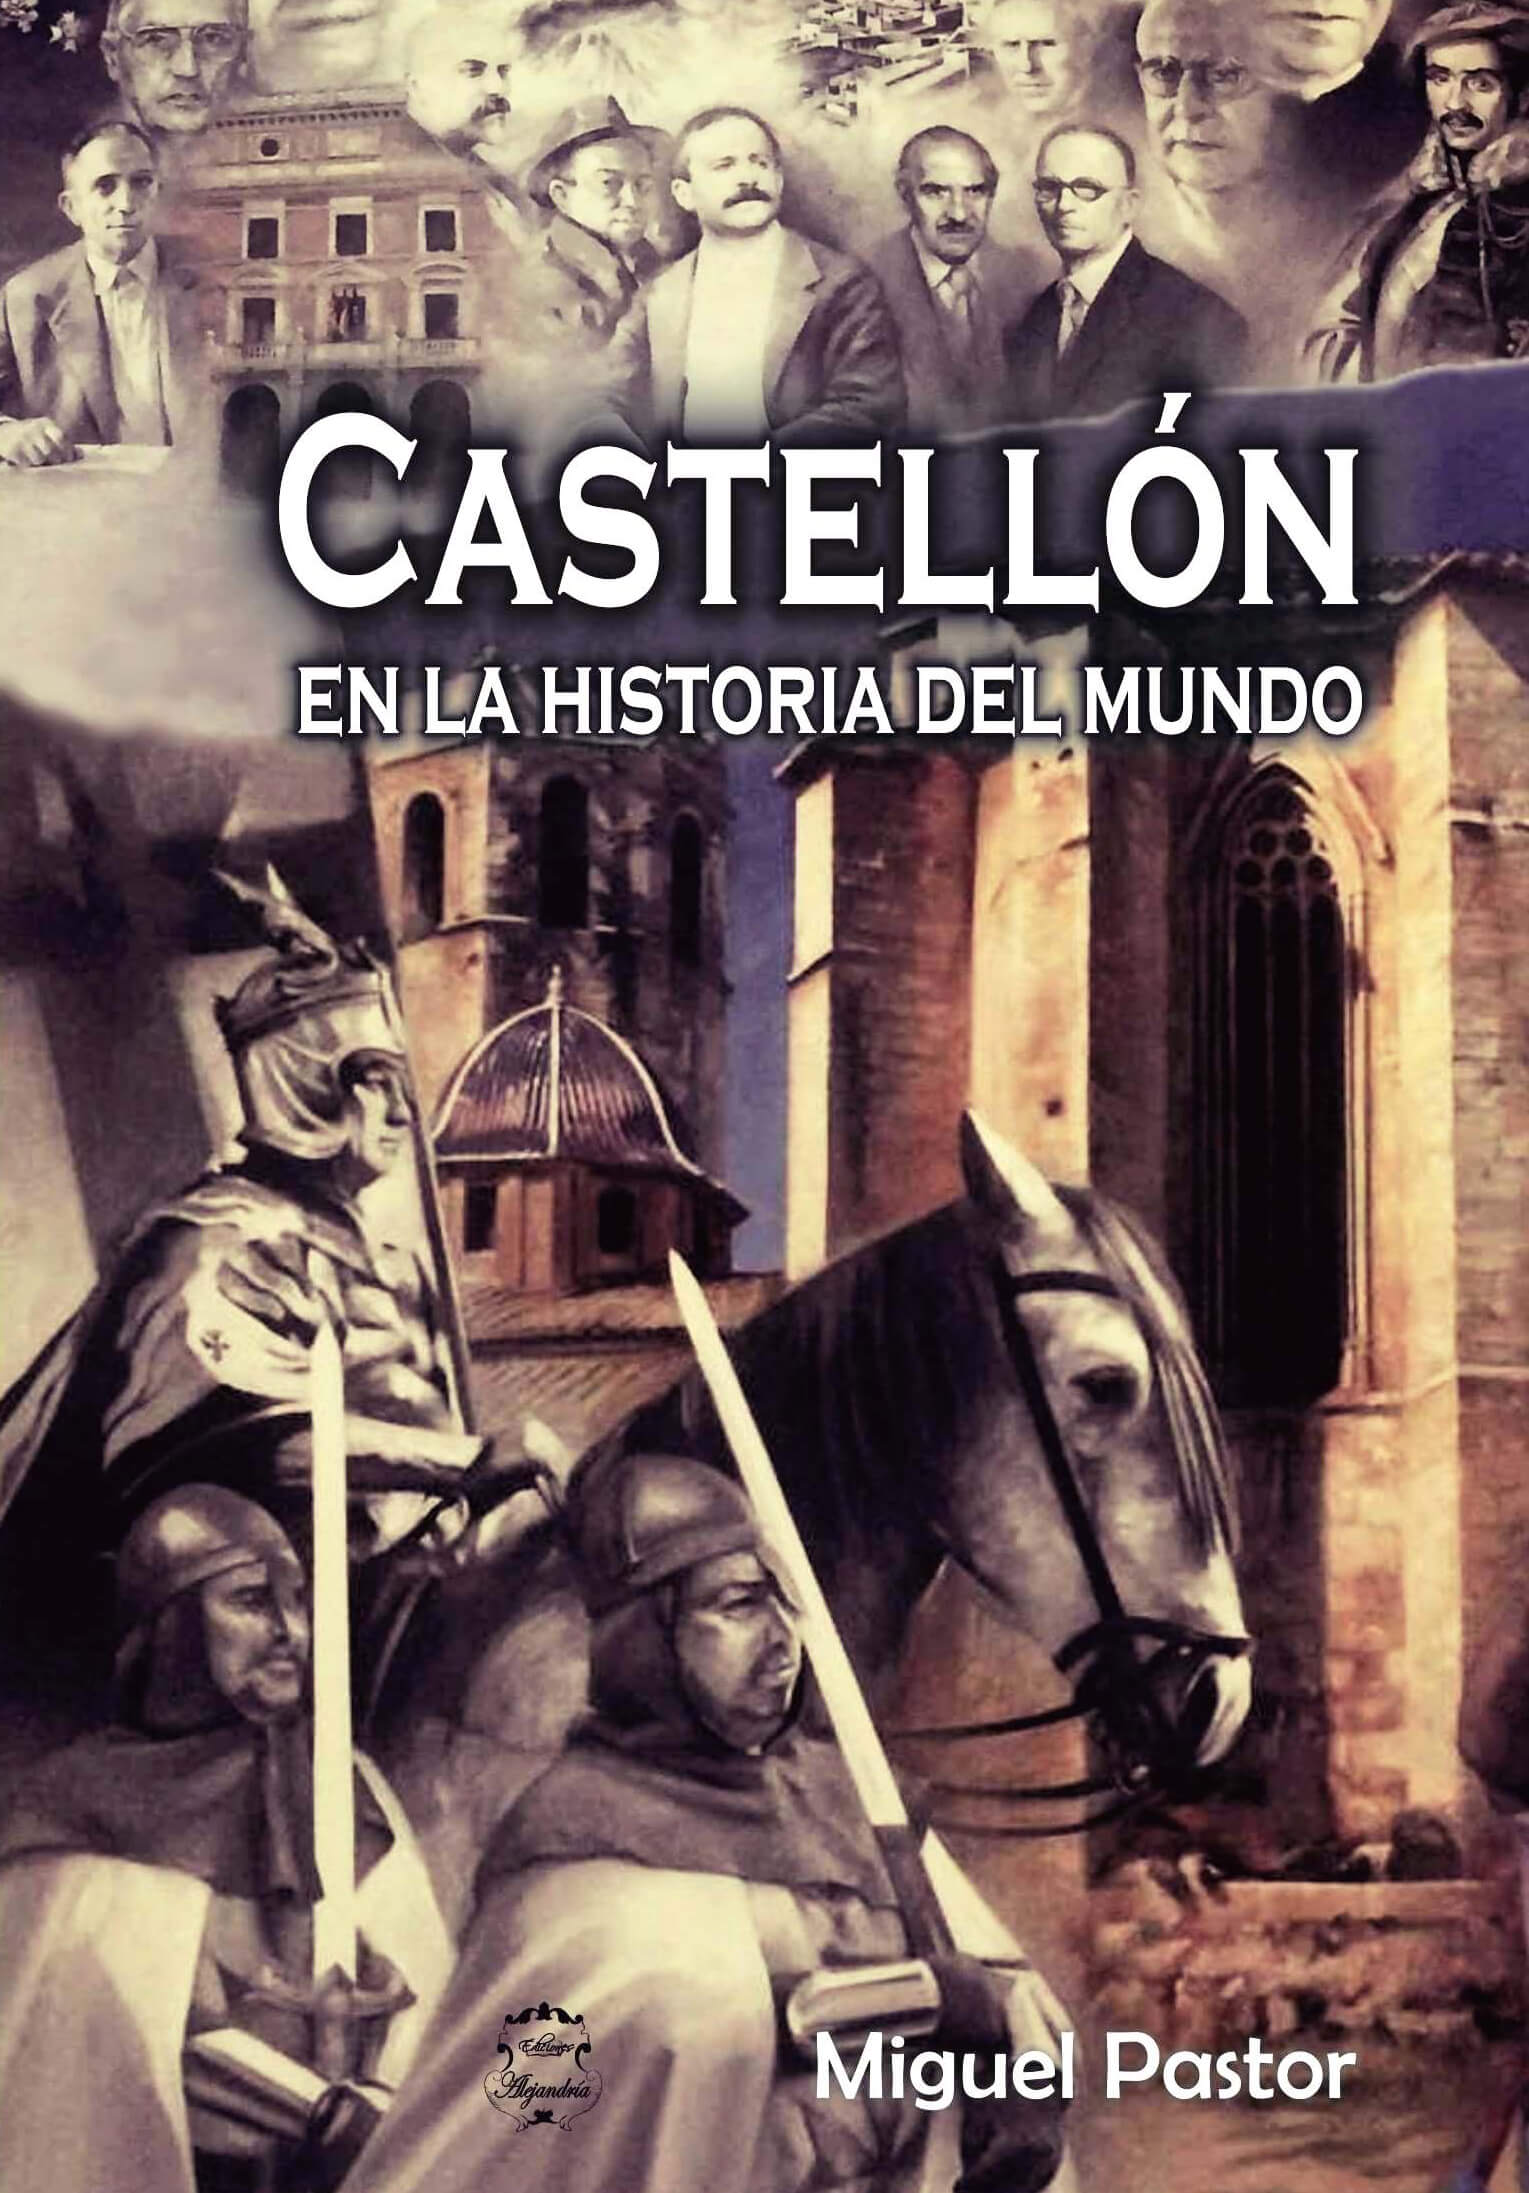 Castellón en la Historia del Mundo